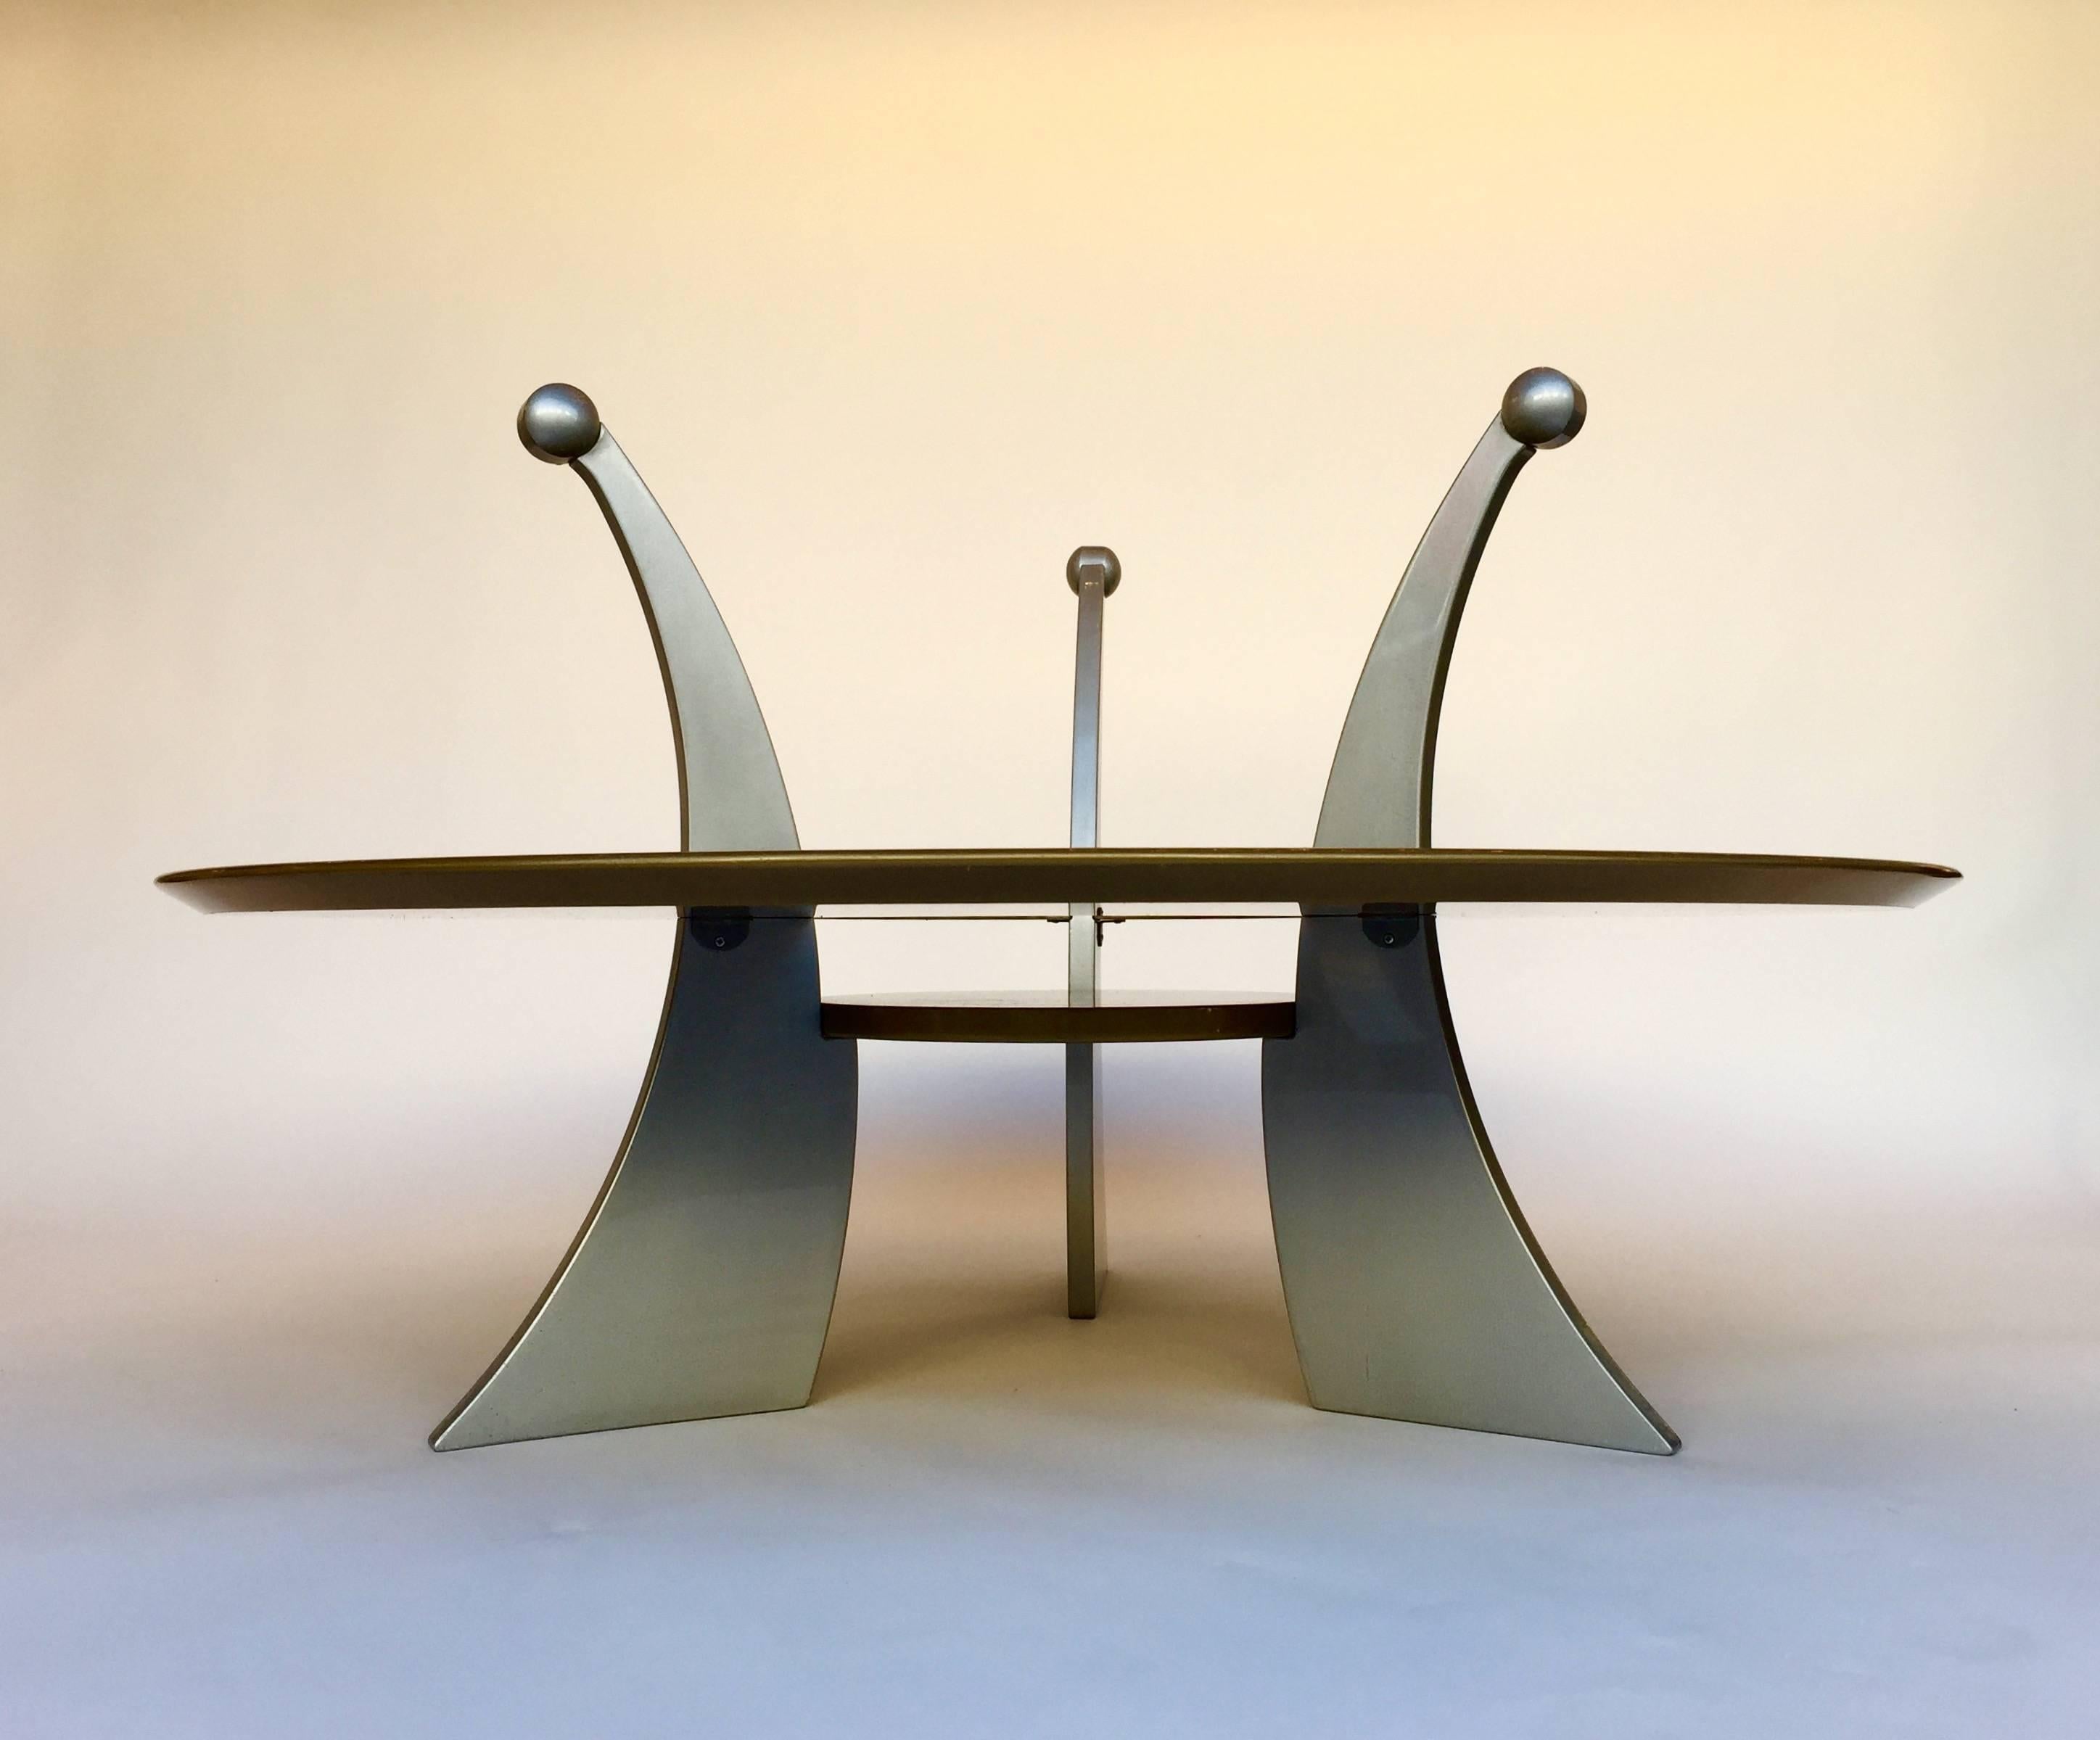 Table basse ou de cocktail orchidée ou orchidea de Massimo Morozzi. Mordoré et métal argenté laqué. Modèle sculptural très intéressant. Assez rare et peu d'édition dans les années 1980. Designer italien, Massimo Morozzi est l'un des fondateurs du